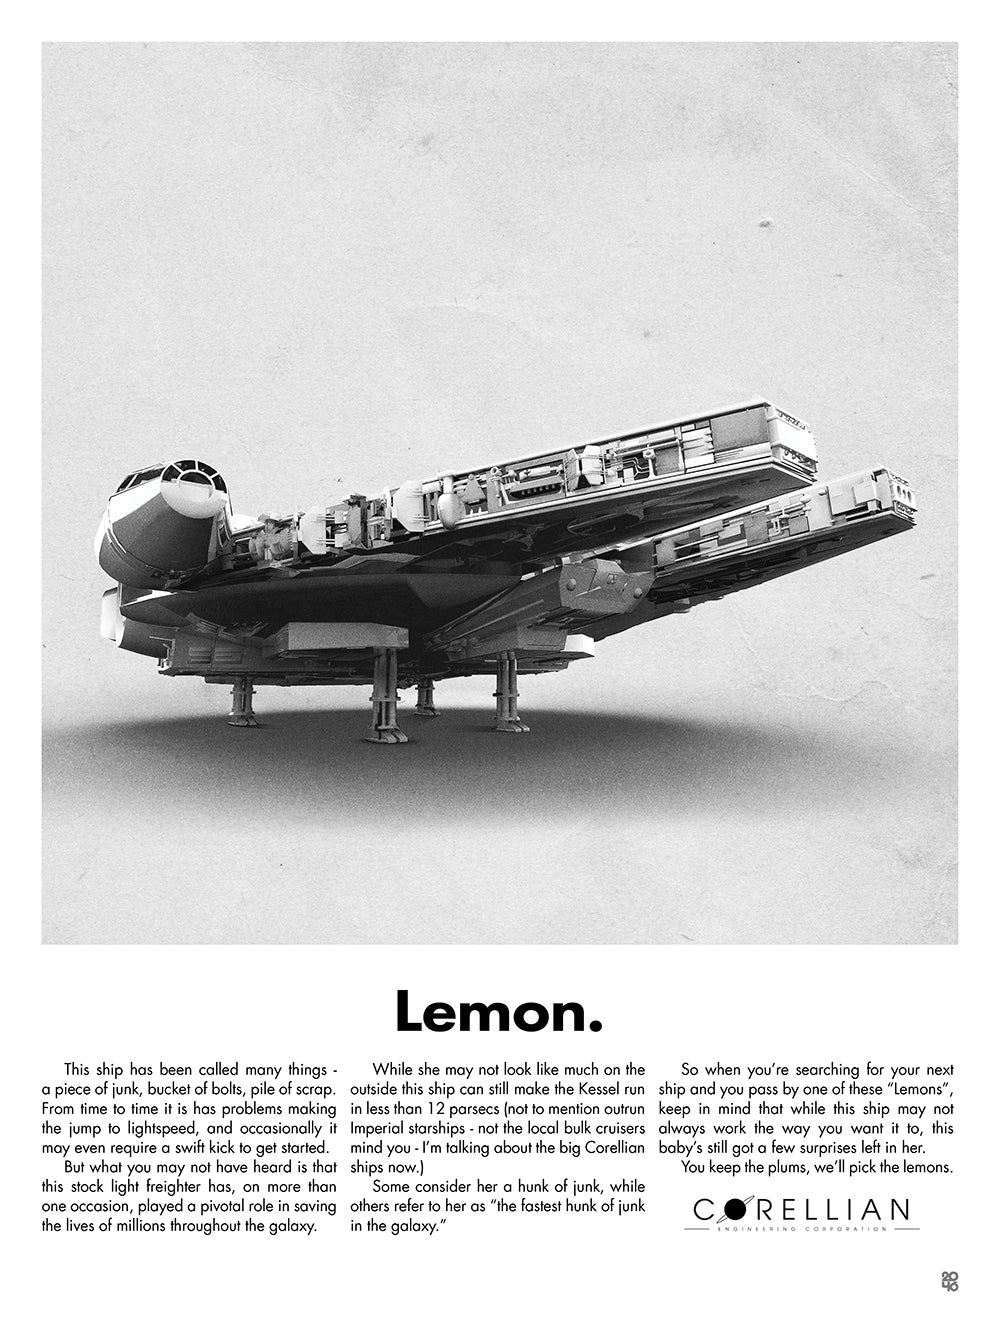 Lemon - Millennium Falcon